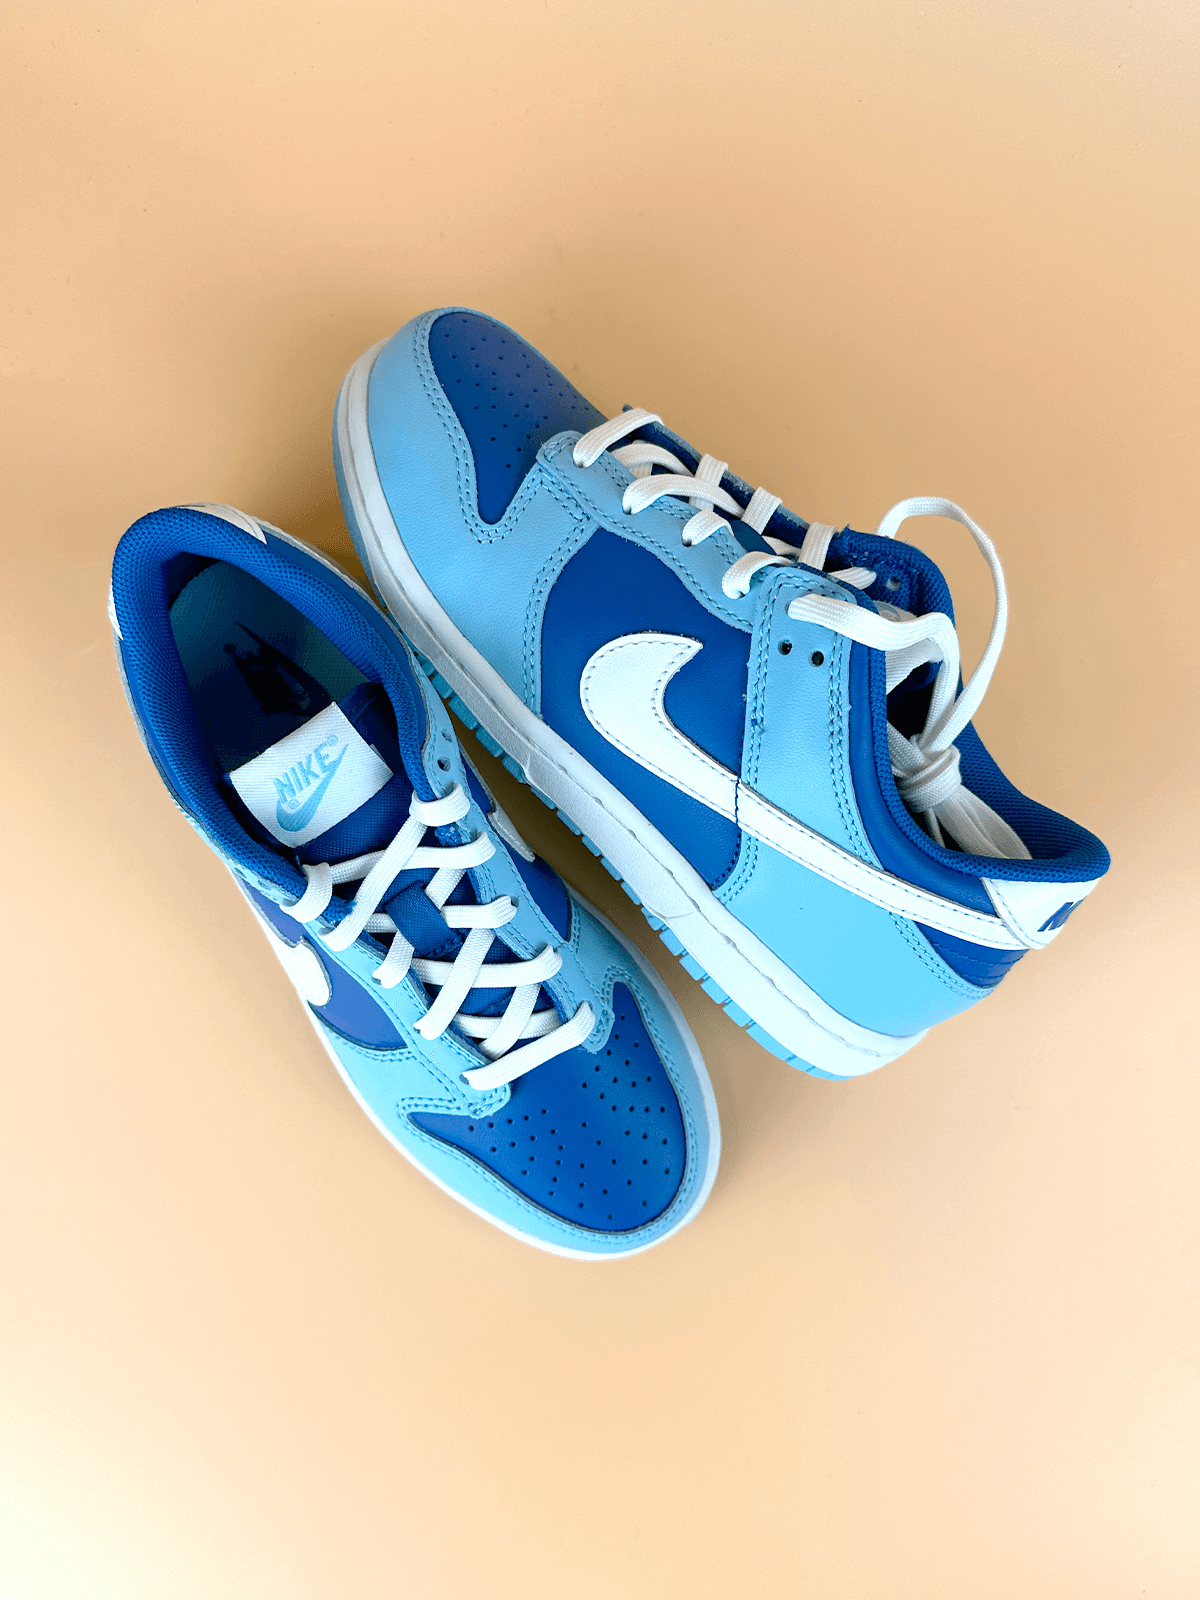 Nike Dunk Low Blueberry Preschool